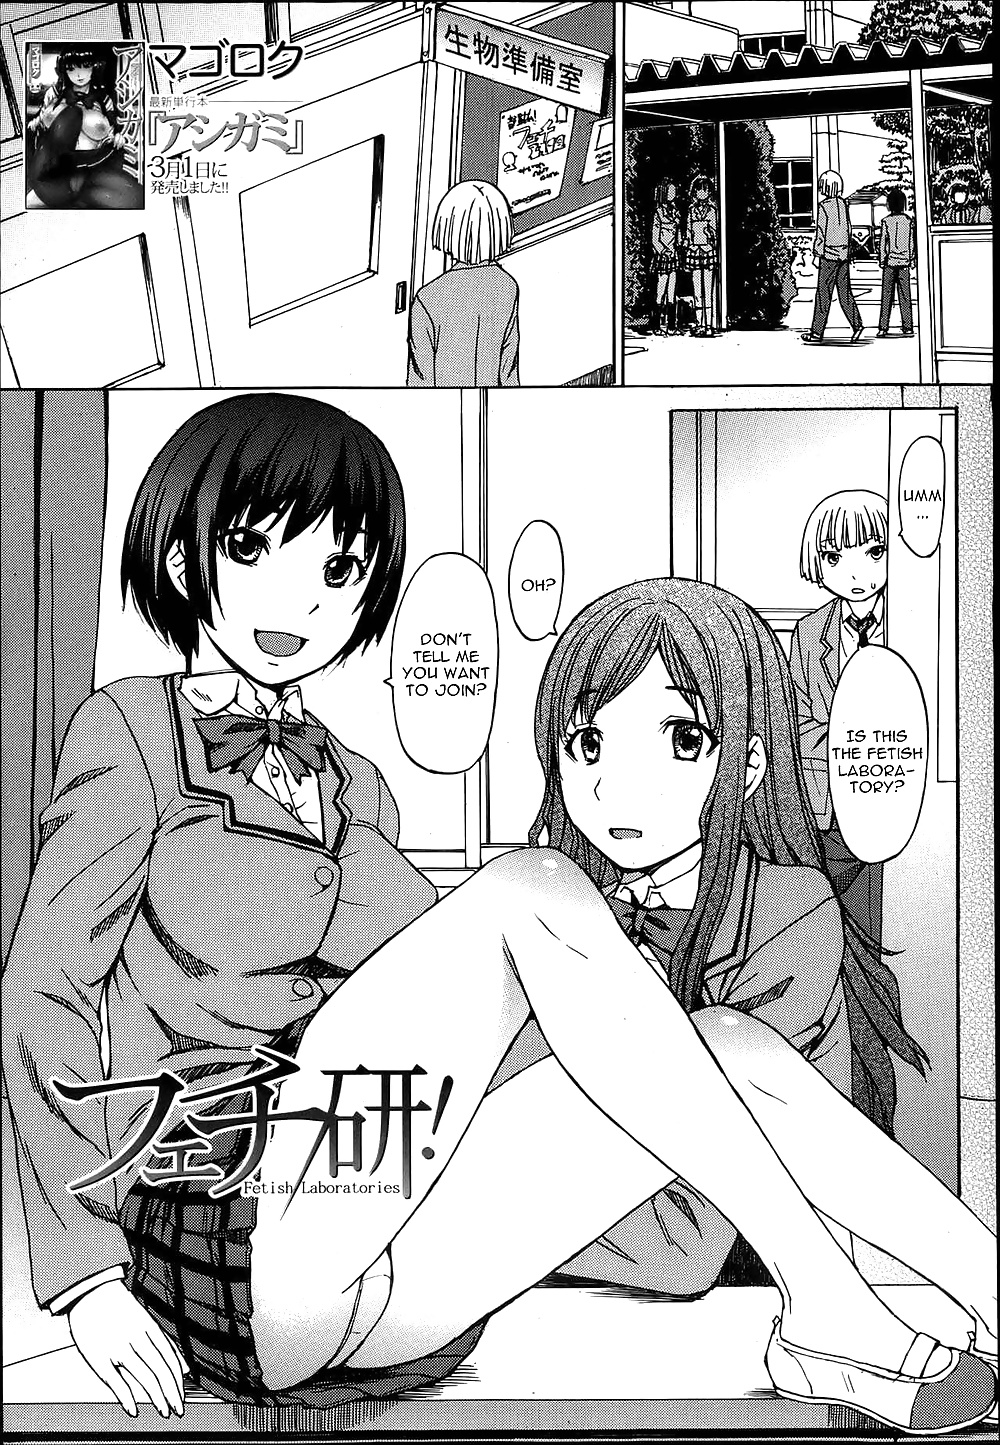 Der Fetisch Labor - Manga (Anime) #38612089